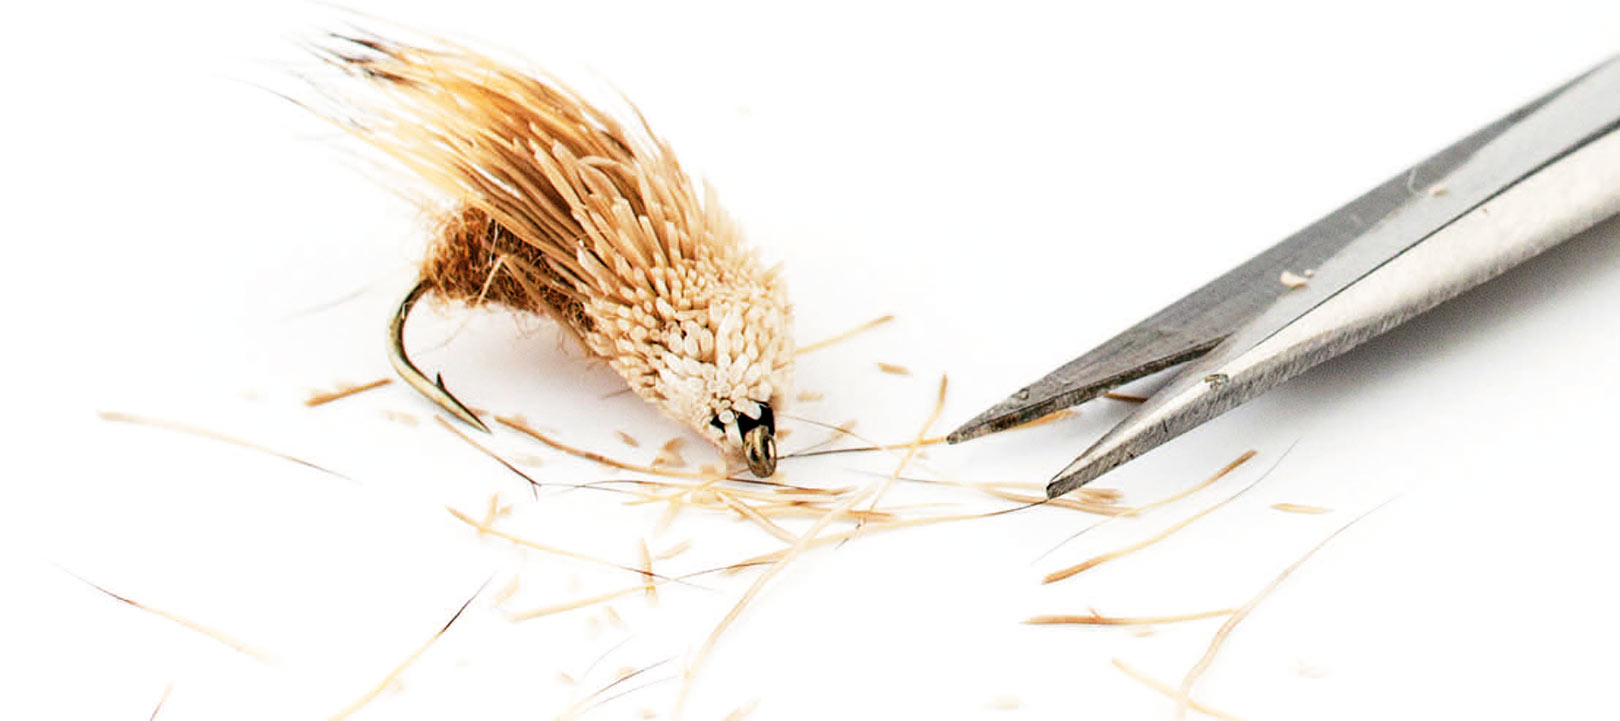 En saks til at trimme fluerne er et uundværligt værktøj,når man skal tilpasse sig fiskesituationen.